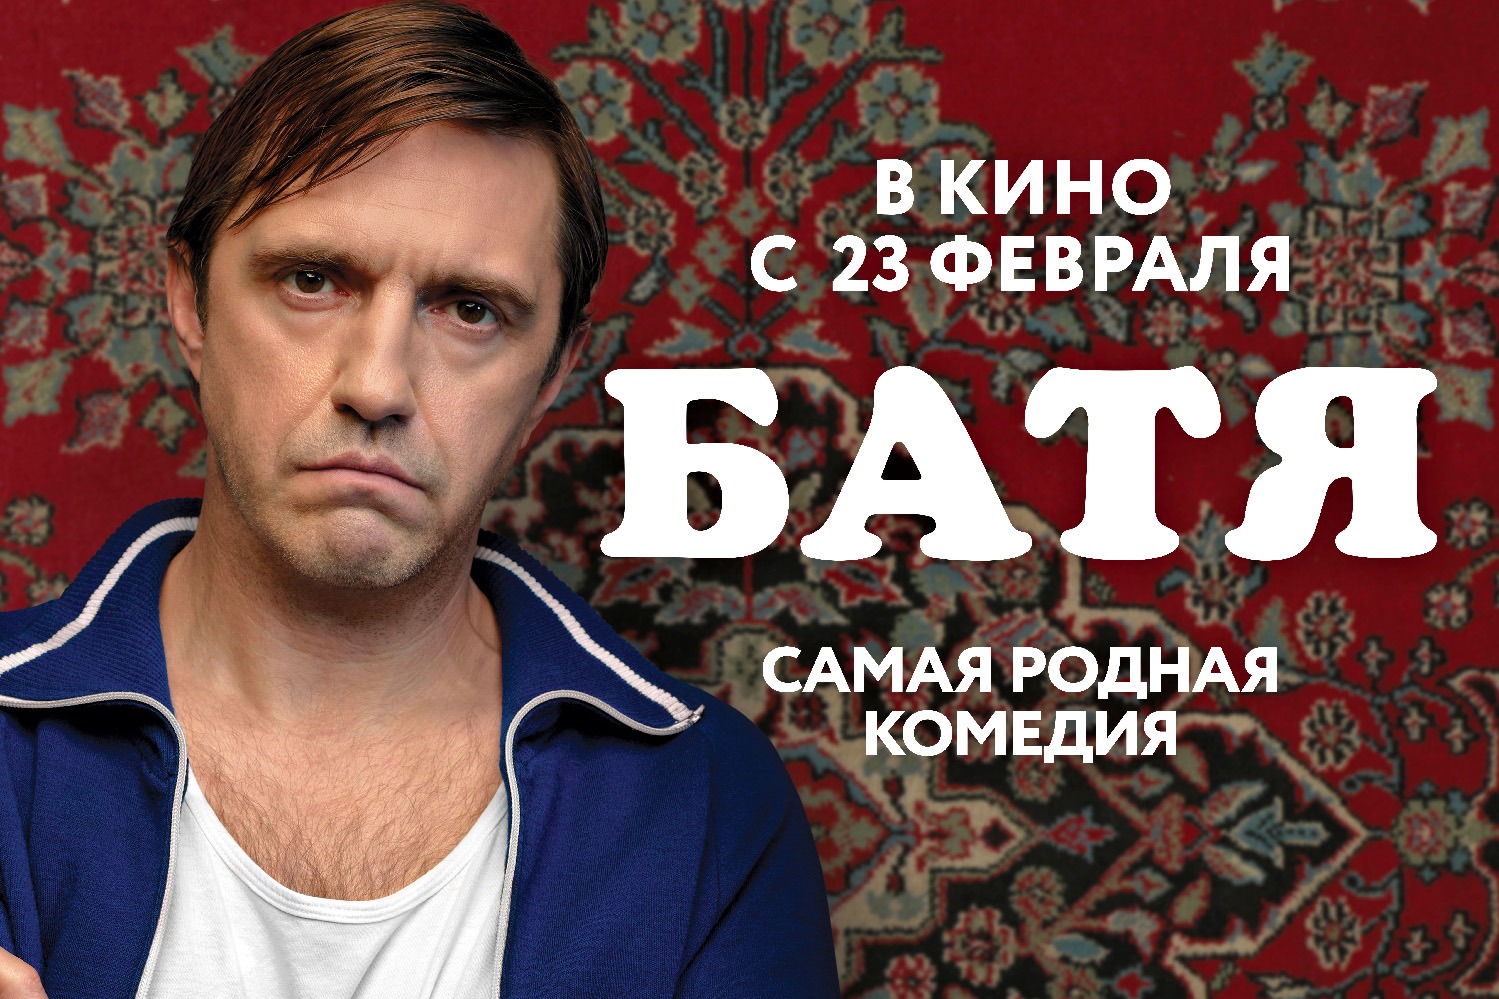 23 февраля в кинотеатрах состоится премьера народной комедии «Батя» с Владимиром Вдовиченковым